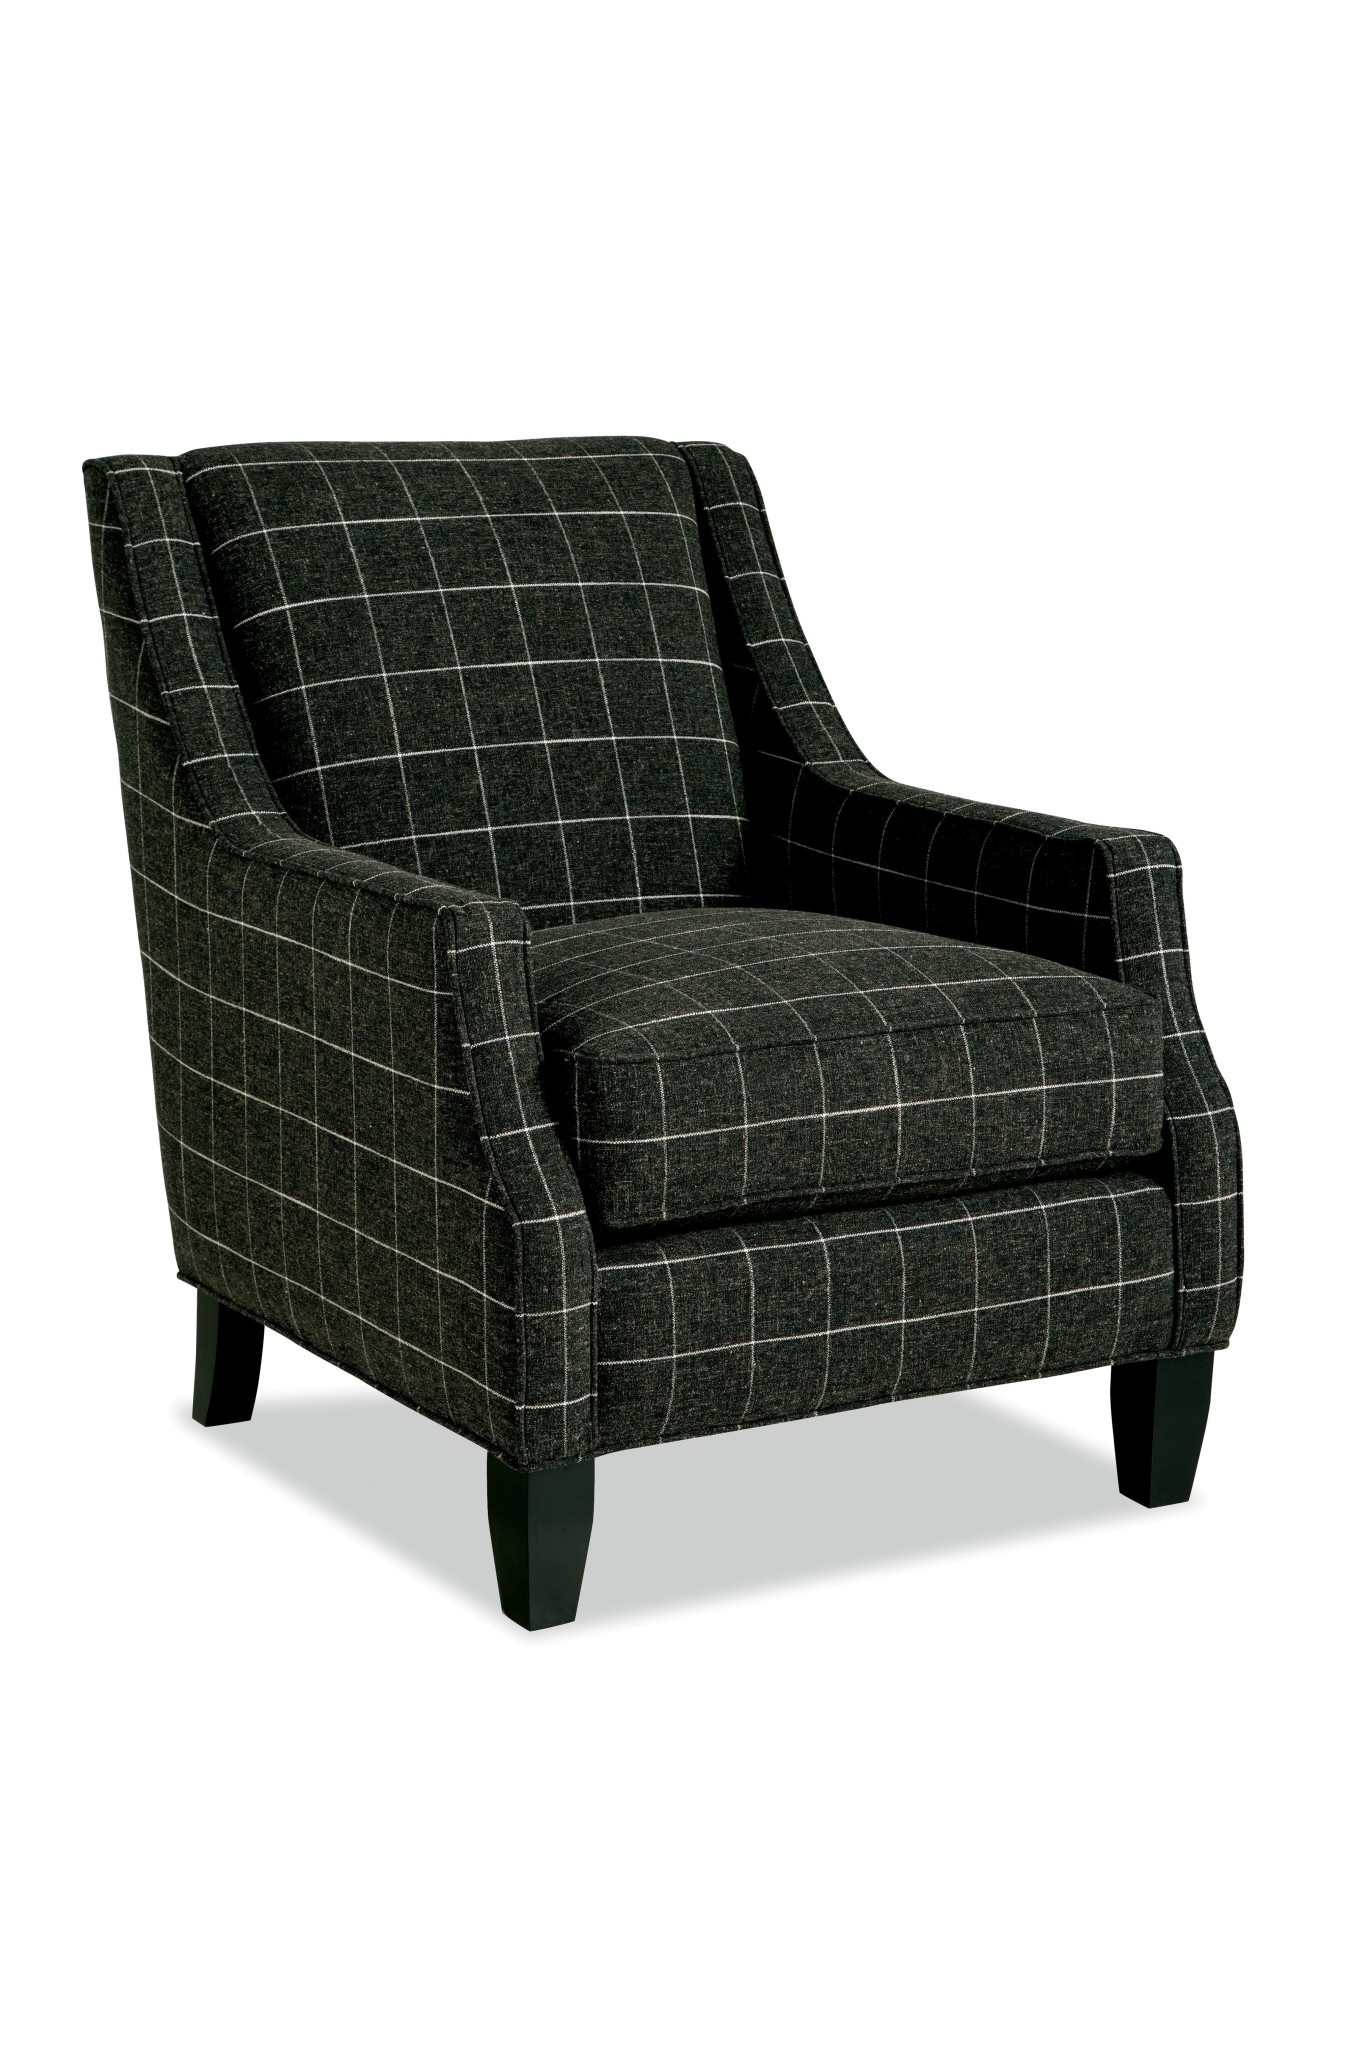 Craftmaster Furniture P029410BD Paula Deen Chair